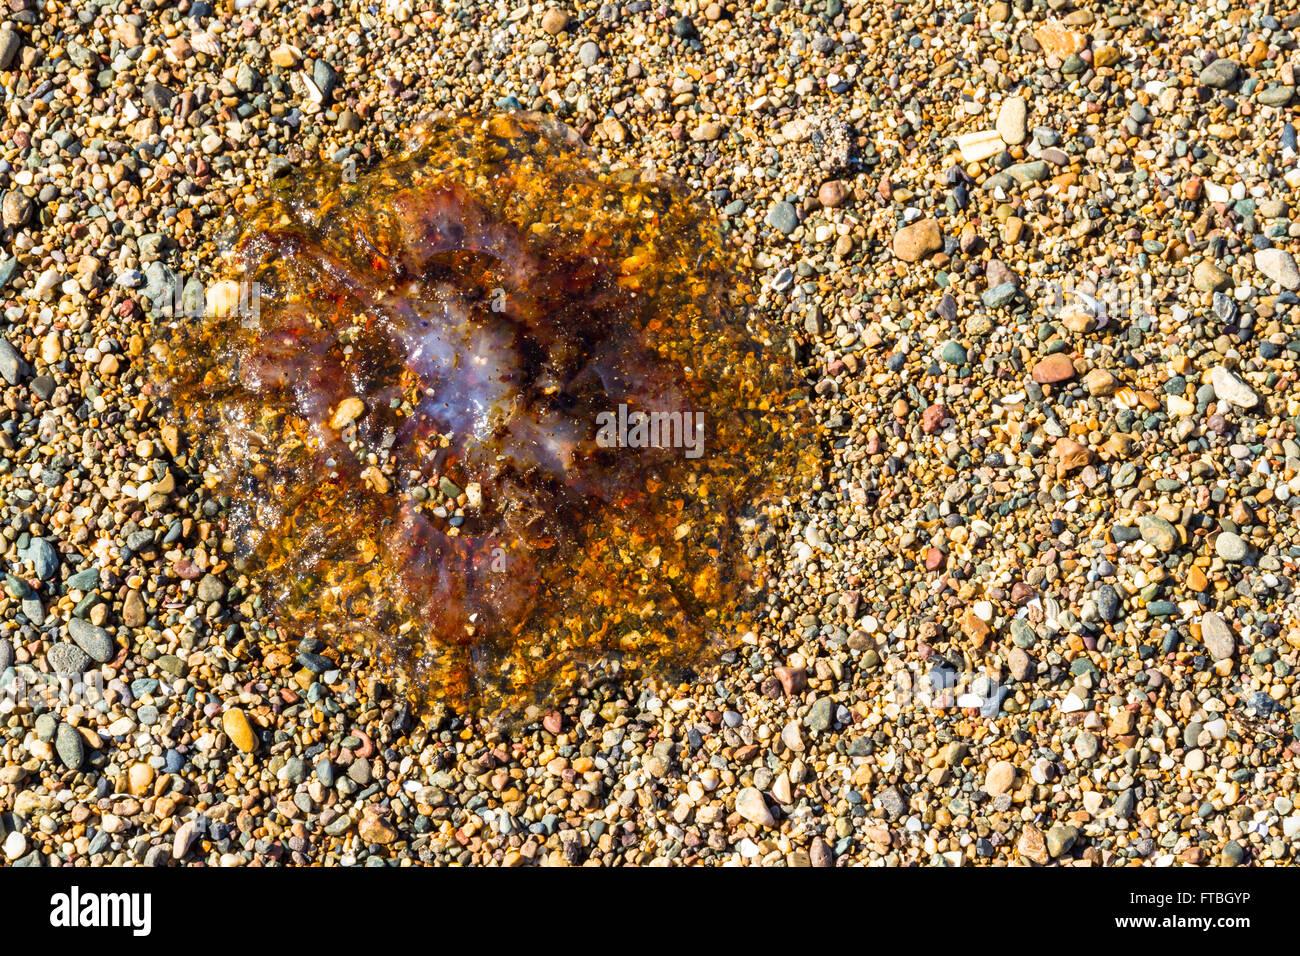 Jellie, méduses ou partie de l'embranchement des Cnidaires échoués sur une plage de galets. Banque D'Images